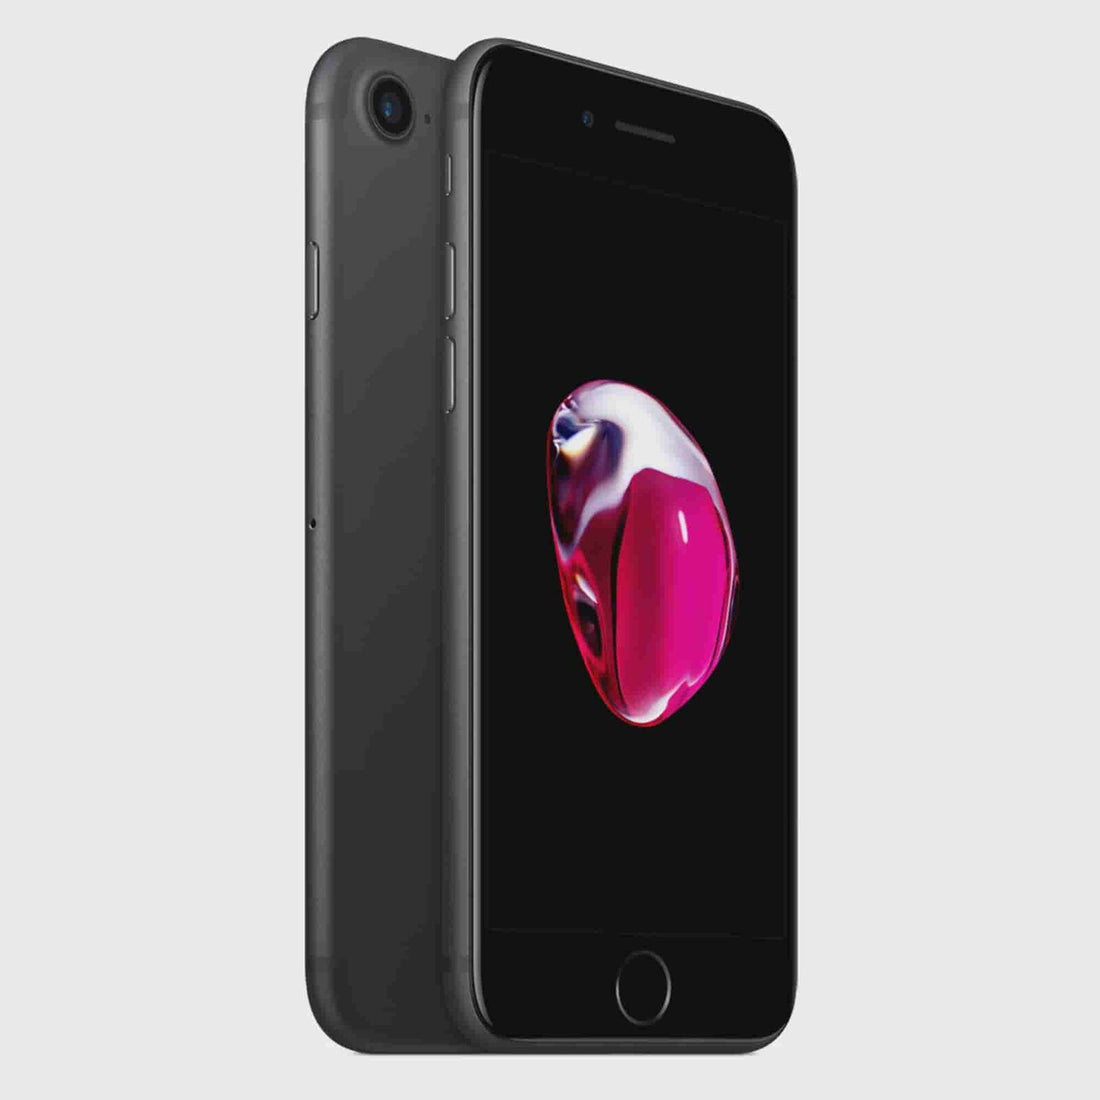 Apple iPhone 7 32GB (Unlocked) - Black (Used)